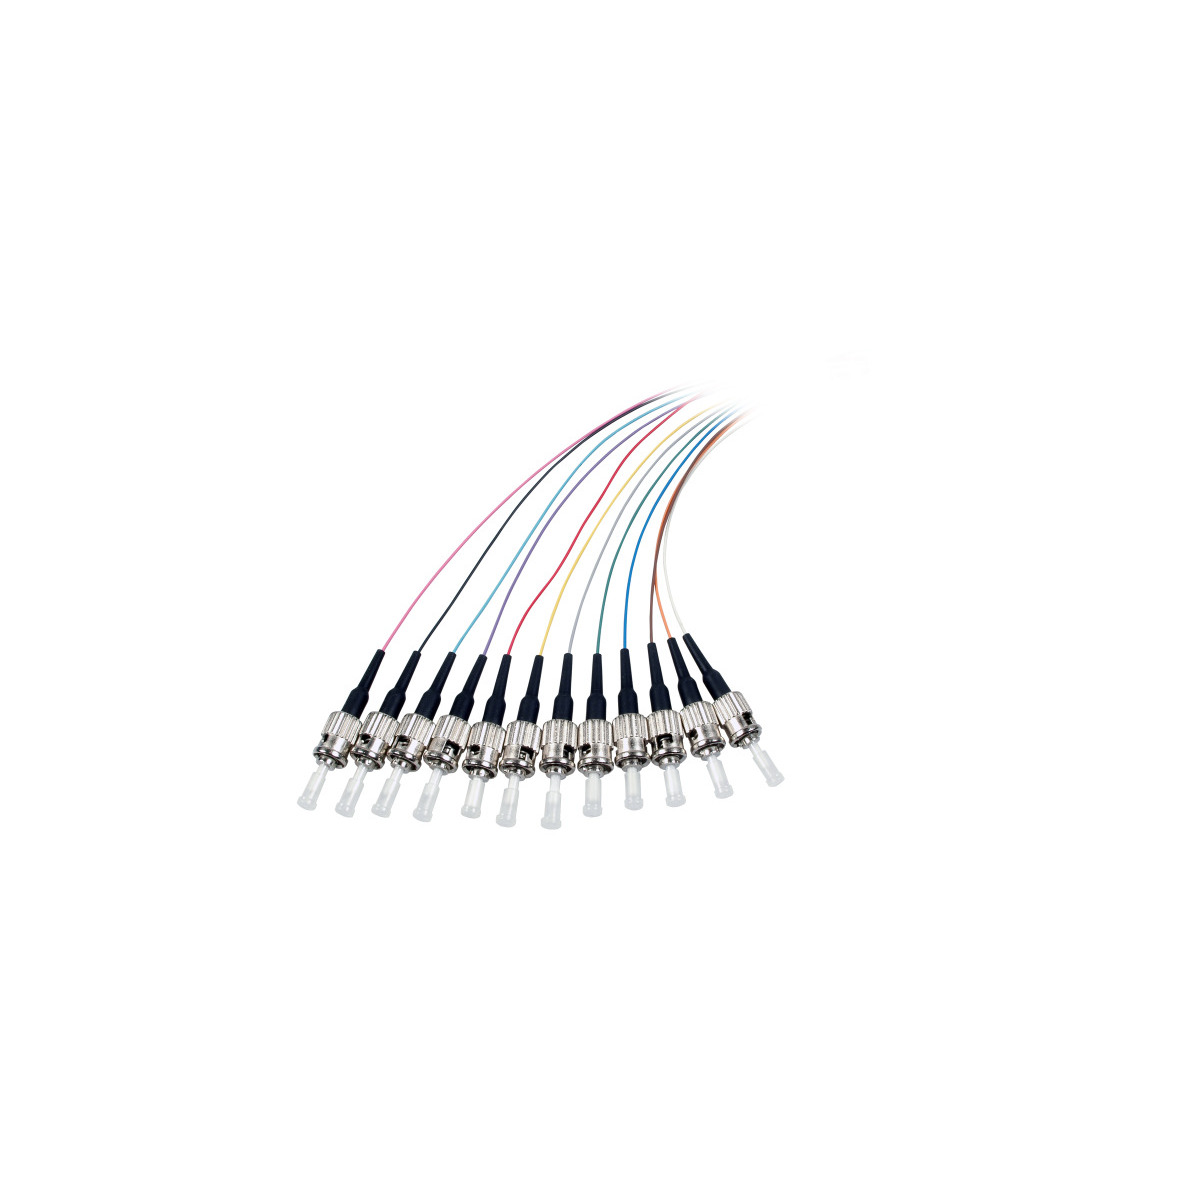 COMMUNIK Kabel Pigtails / ST 2 m Faserpigtail, Glasfaserkabel